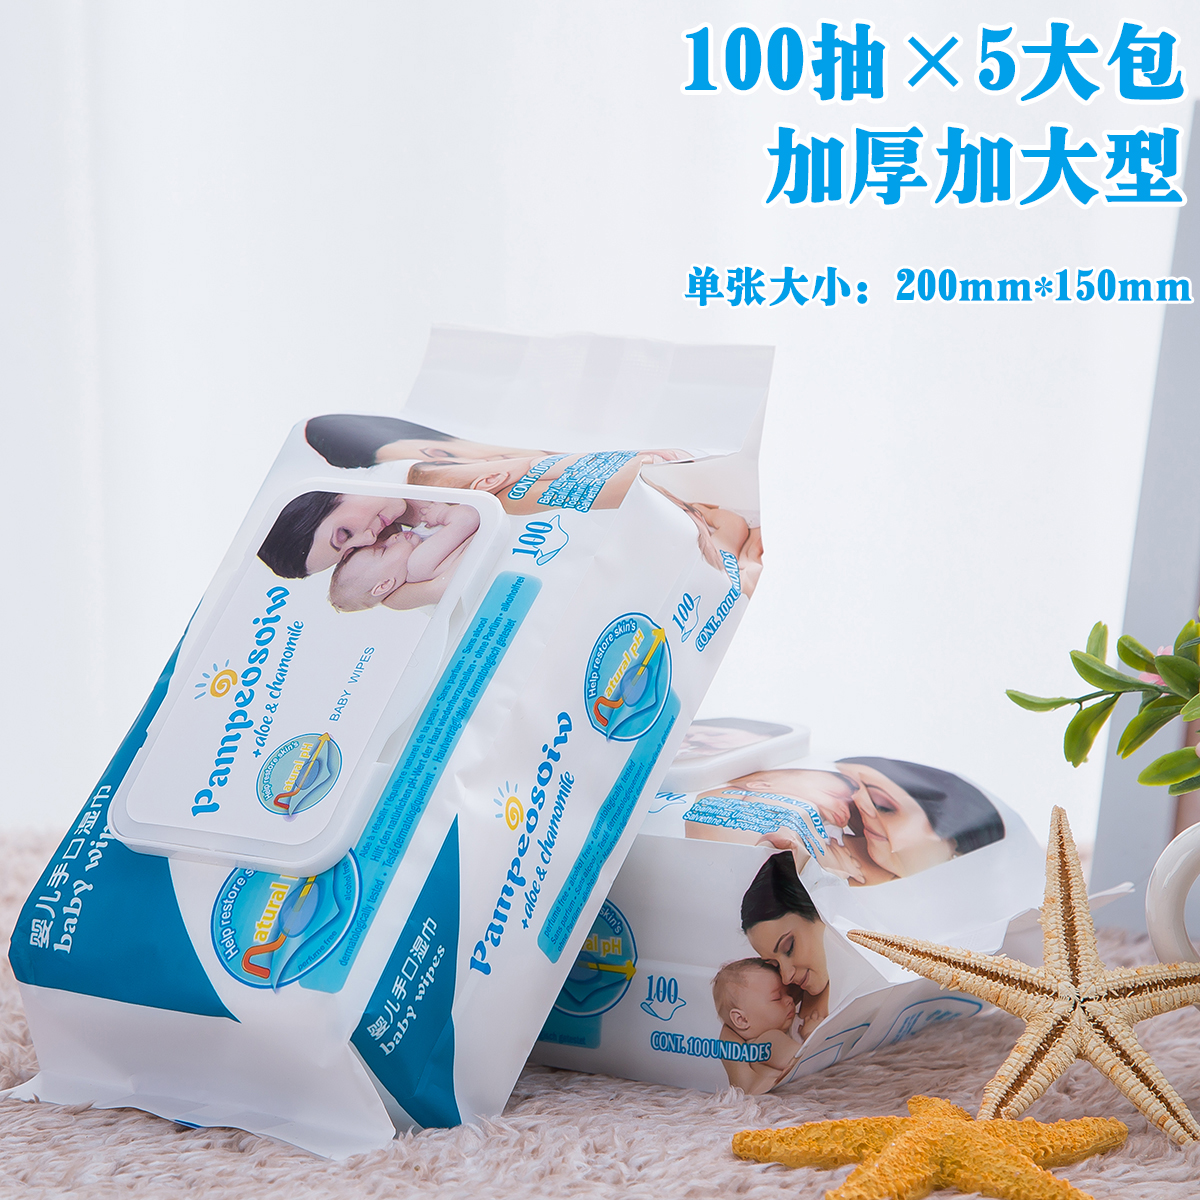 婴儿湿巾湿纸巾100抽*5连包共500抽带盖新生儿童宝宝手口屁屁包邮